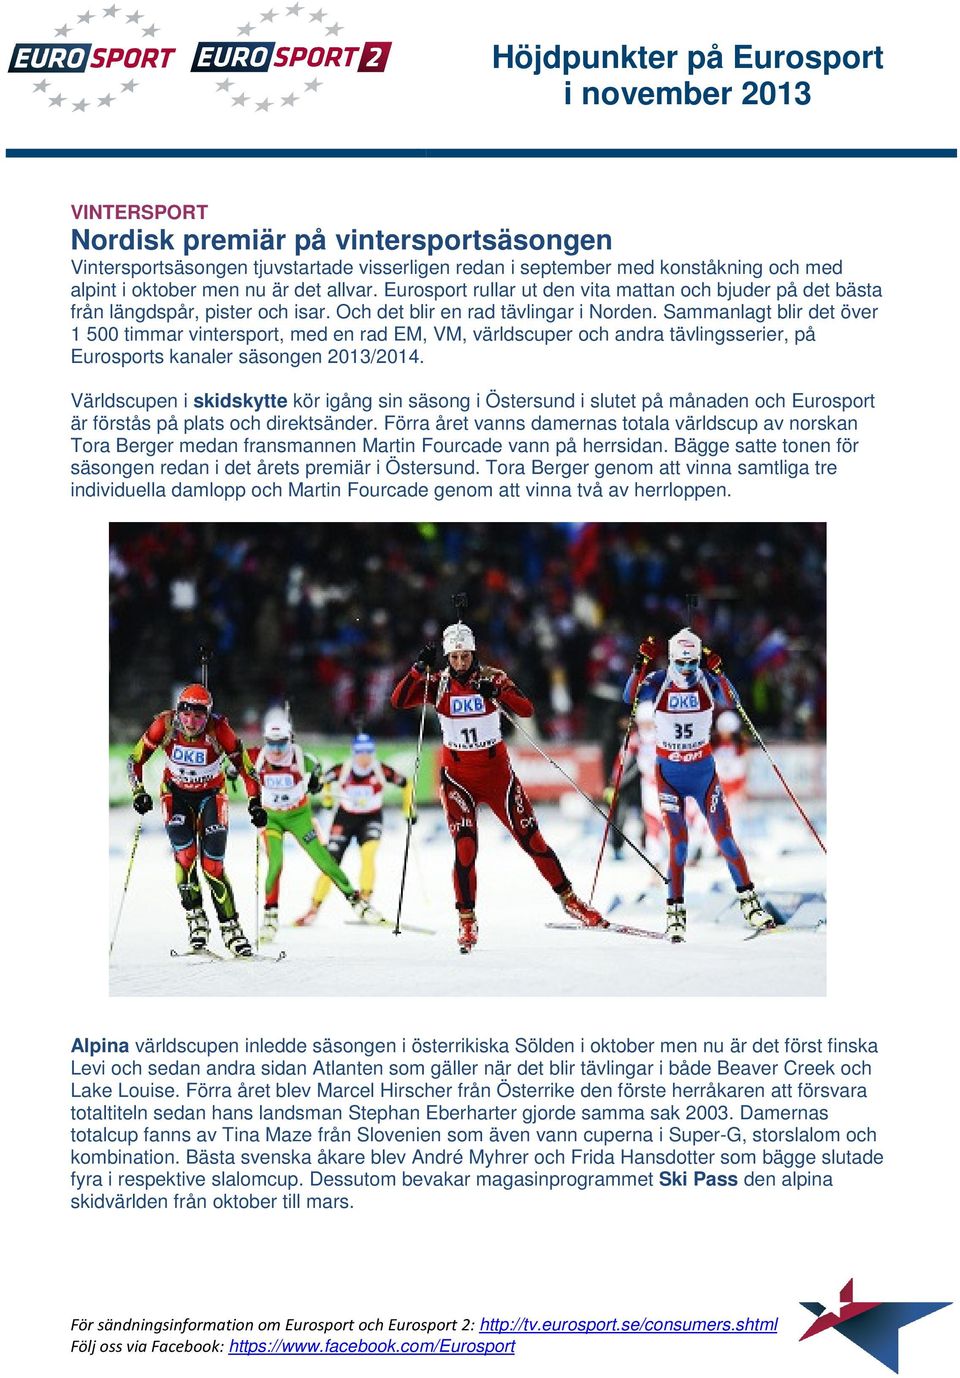 Sammanlagt blir det över 1 500 timmar vintersport, med en rad EM, VM, världscuper och andra tävlingsserier, på Eurosports kanaler säsongen 2013/2014.